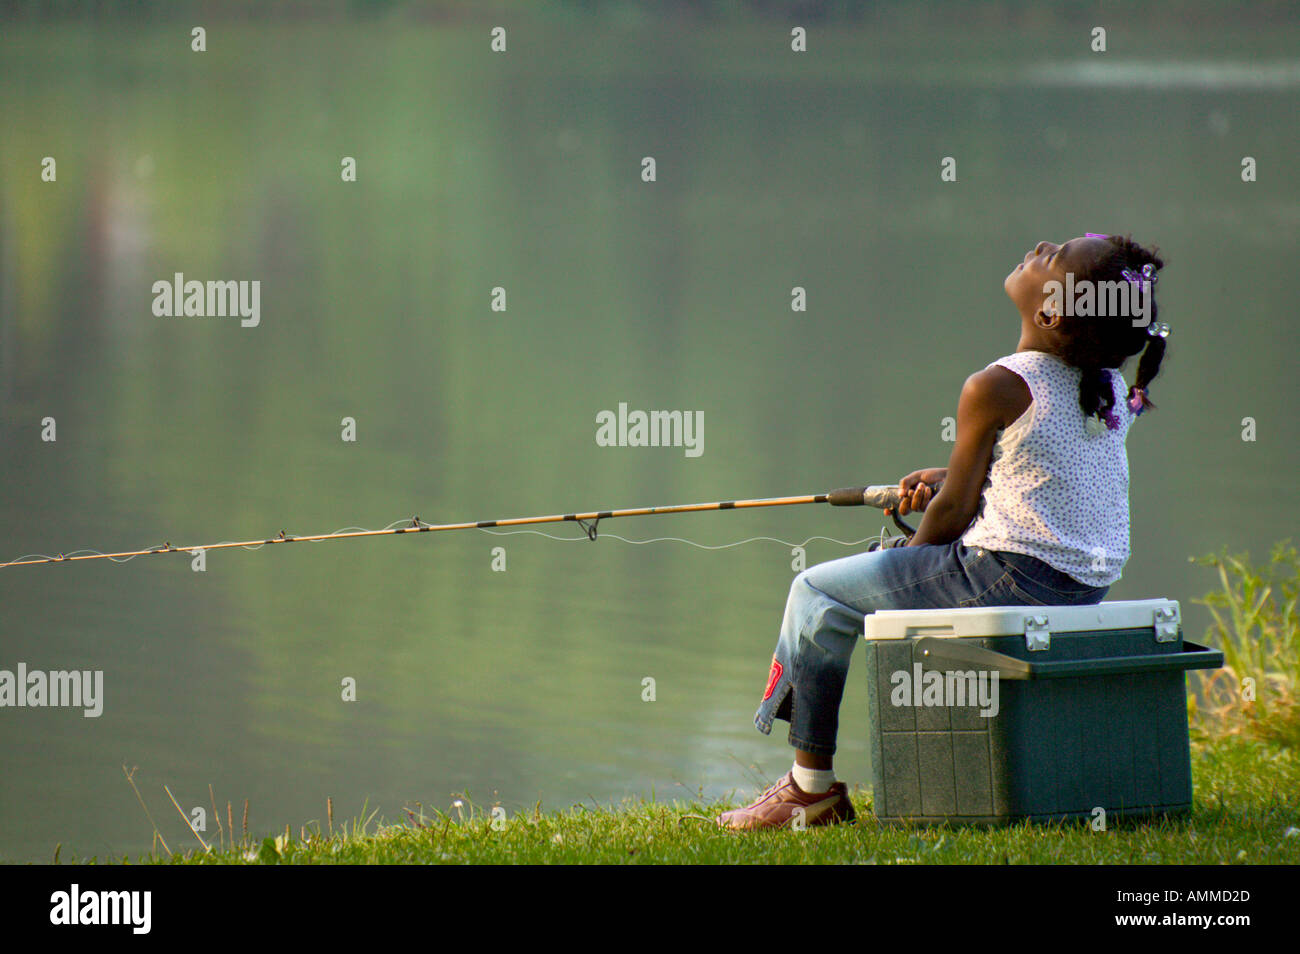 https://c8.alamy.com/comp/AMMD2D/little-girl-with-fishing-pole-AMMD2D.jpg